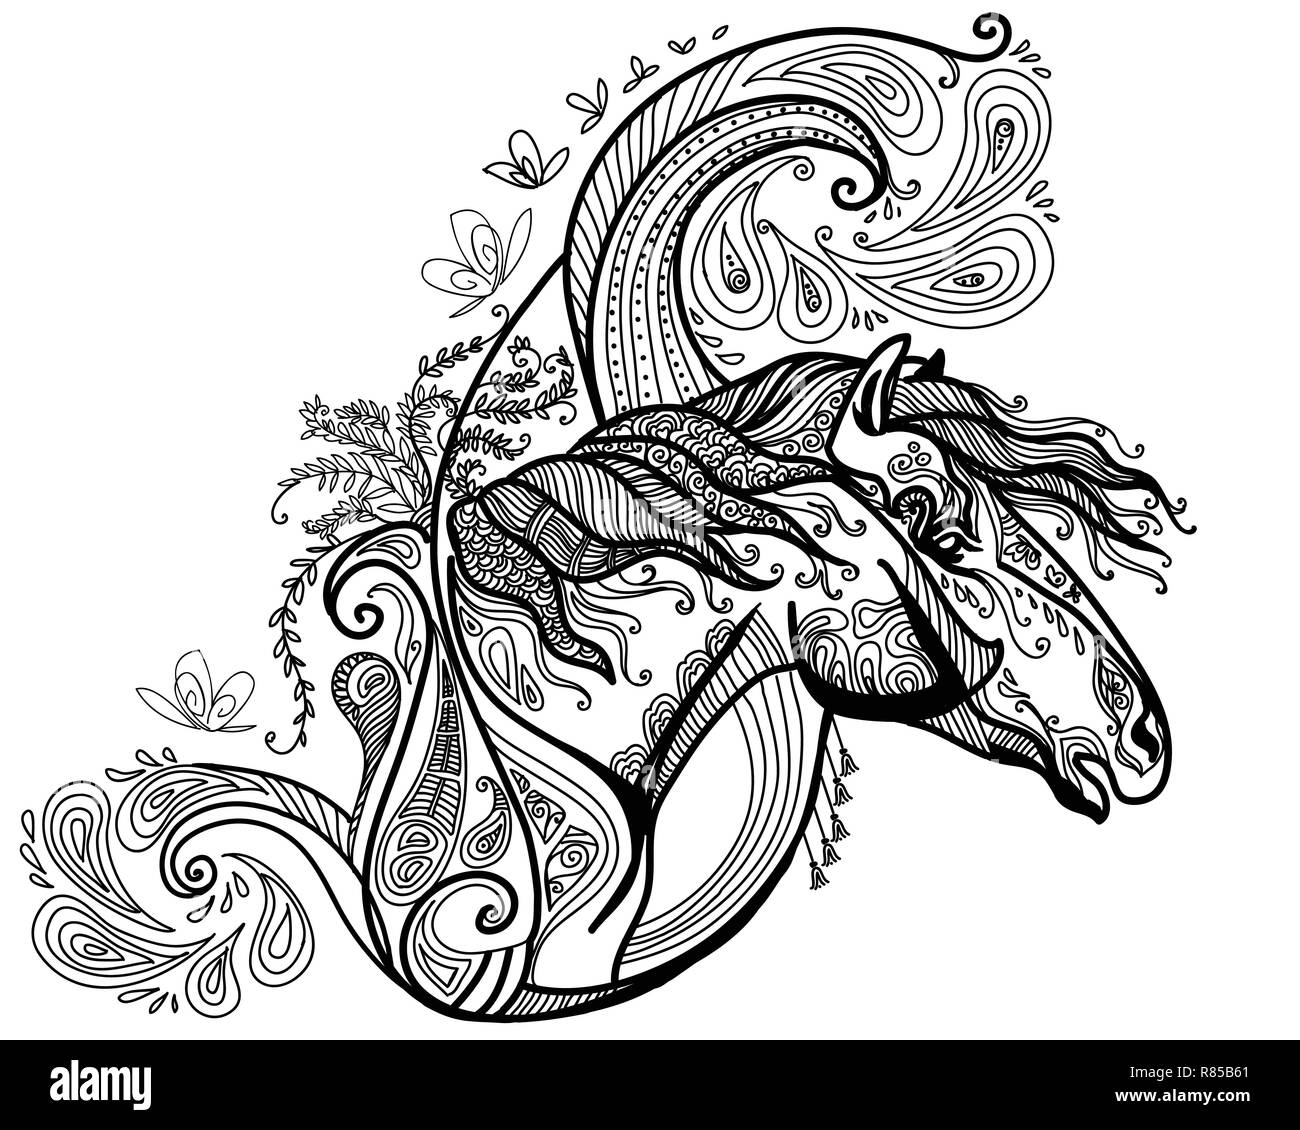 Vektor hand Zeichnung Abbildung zentangle Pferd in schwarzer Farbe auf weißem Hintergrund. Doodle Pferd Abbildung mit pflanzlichen Elementen. Farbgebung Stock Vektor